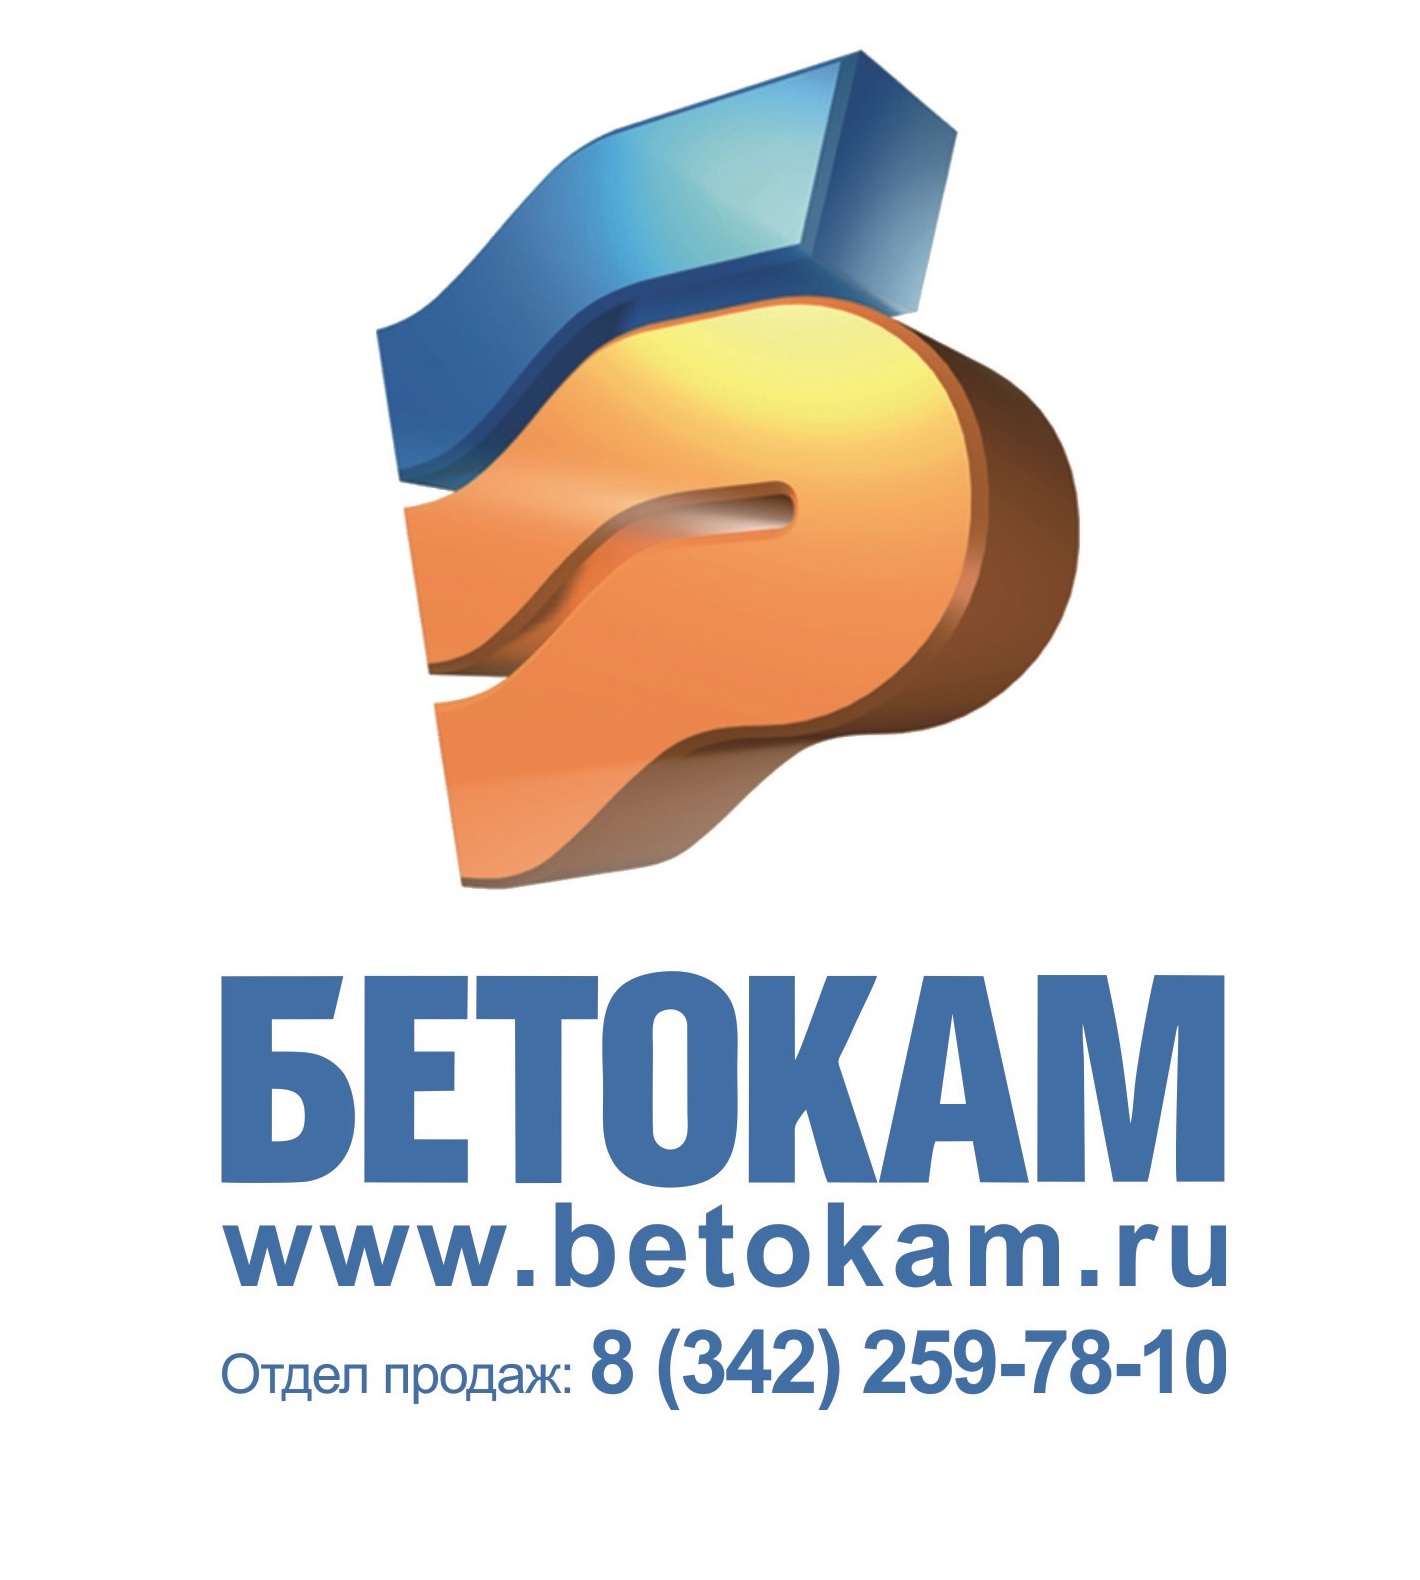 Компания «Бетокам» представит свою продукцию на ежегодной ярмарке строительства